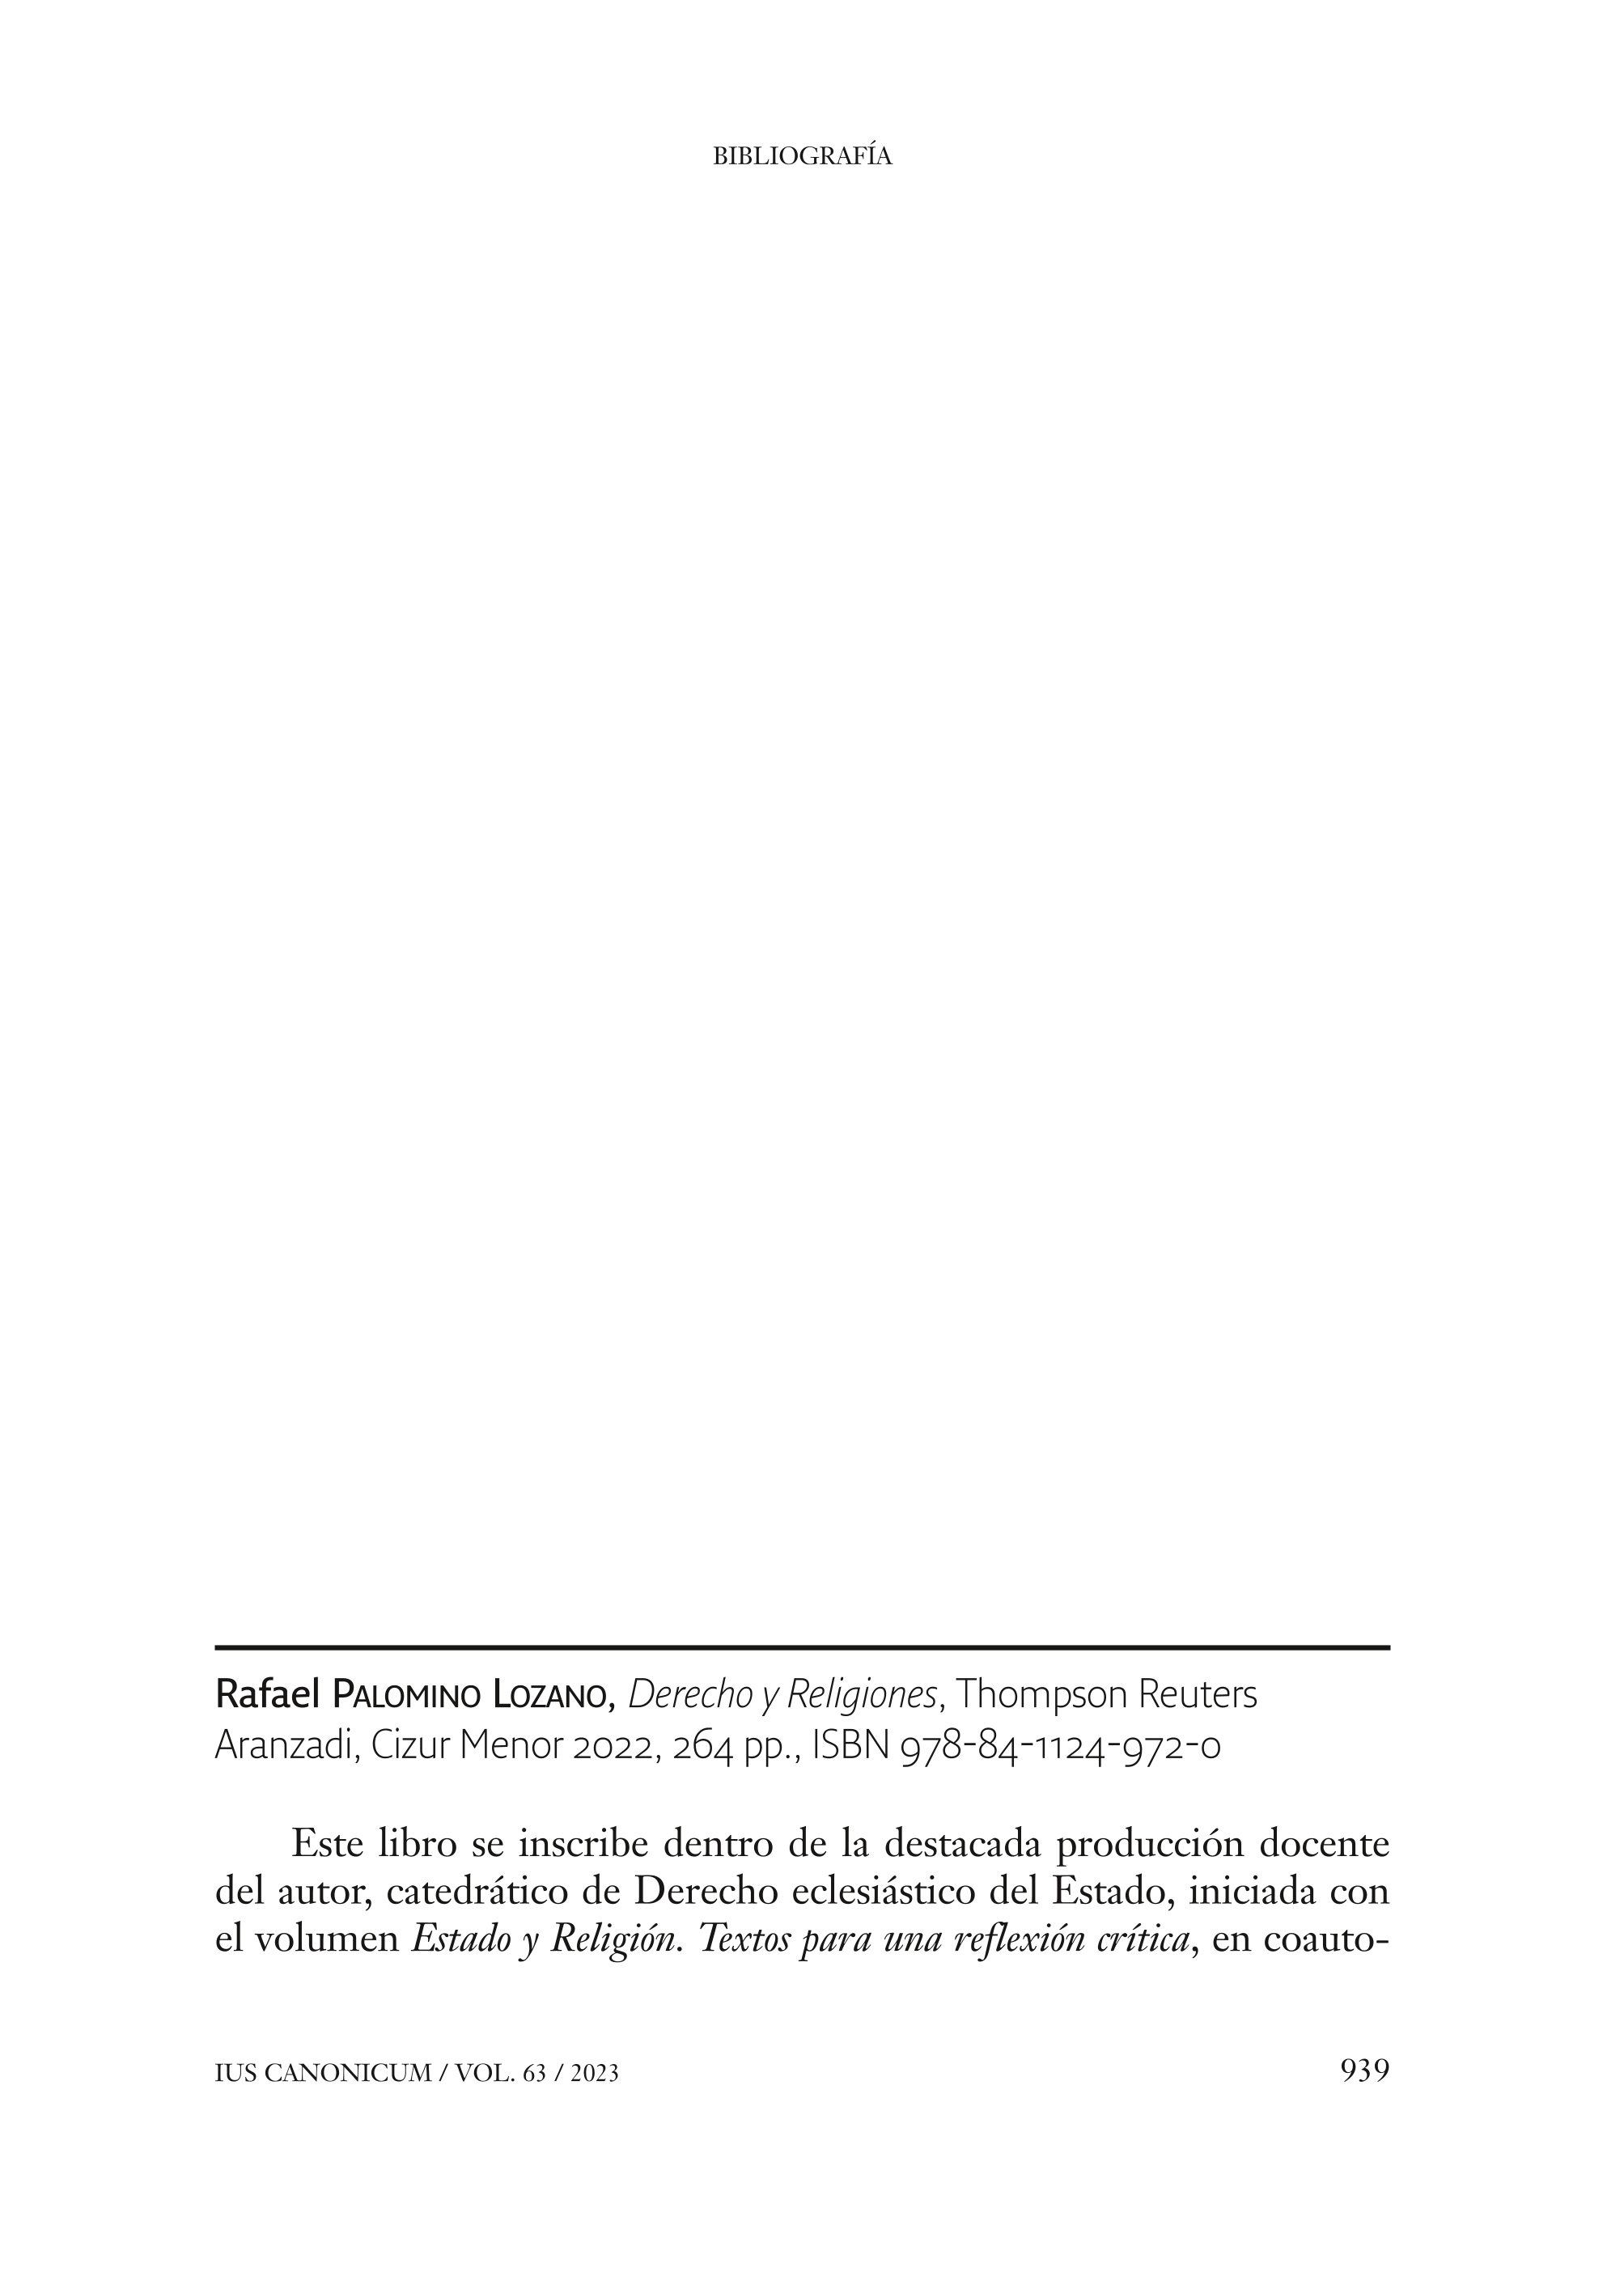 Rafael PALOMINO LOZANO, Derecho y Religiones, Thompson Reuters-Aranzadi, Cizur Menor 2022, 264 pp., ISBN 978-84-1124-972-0